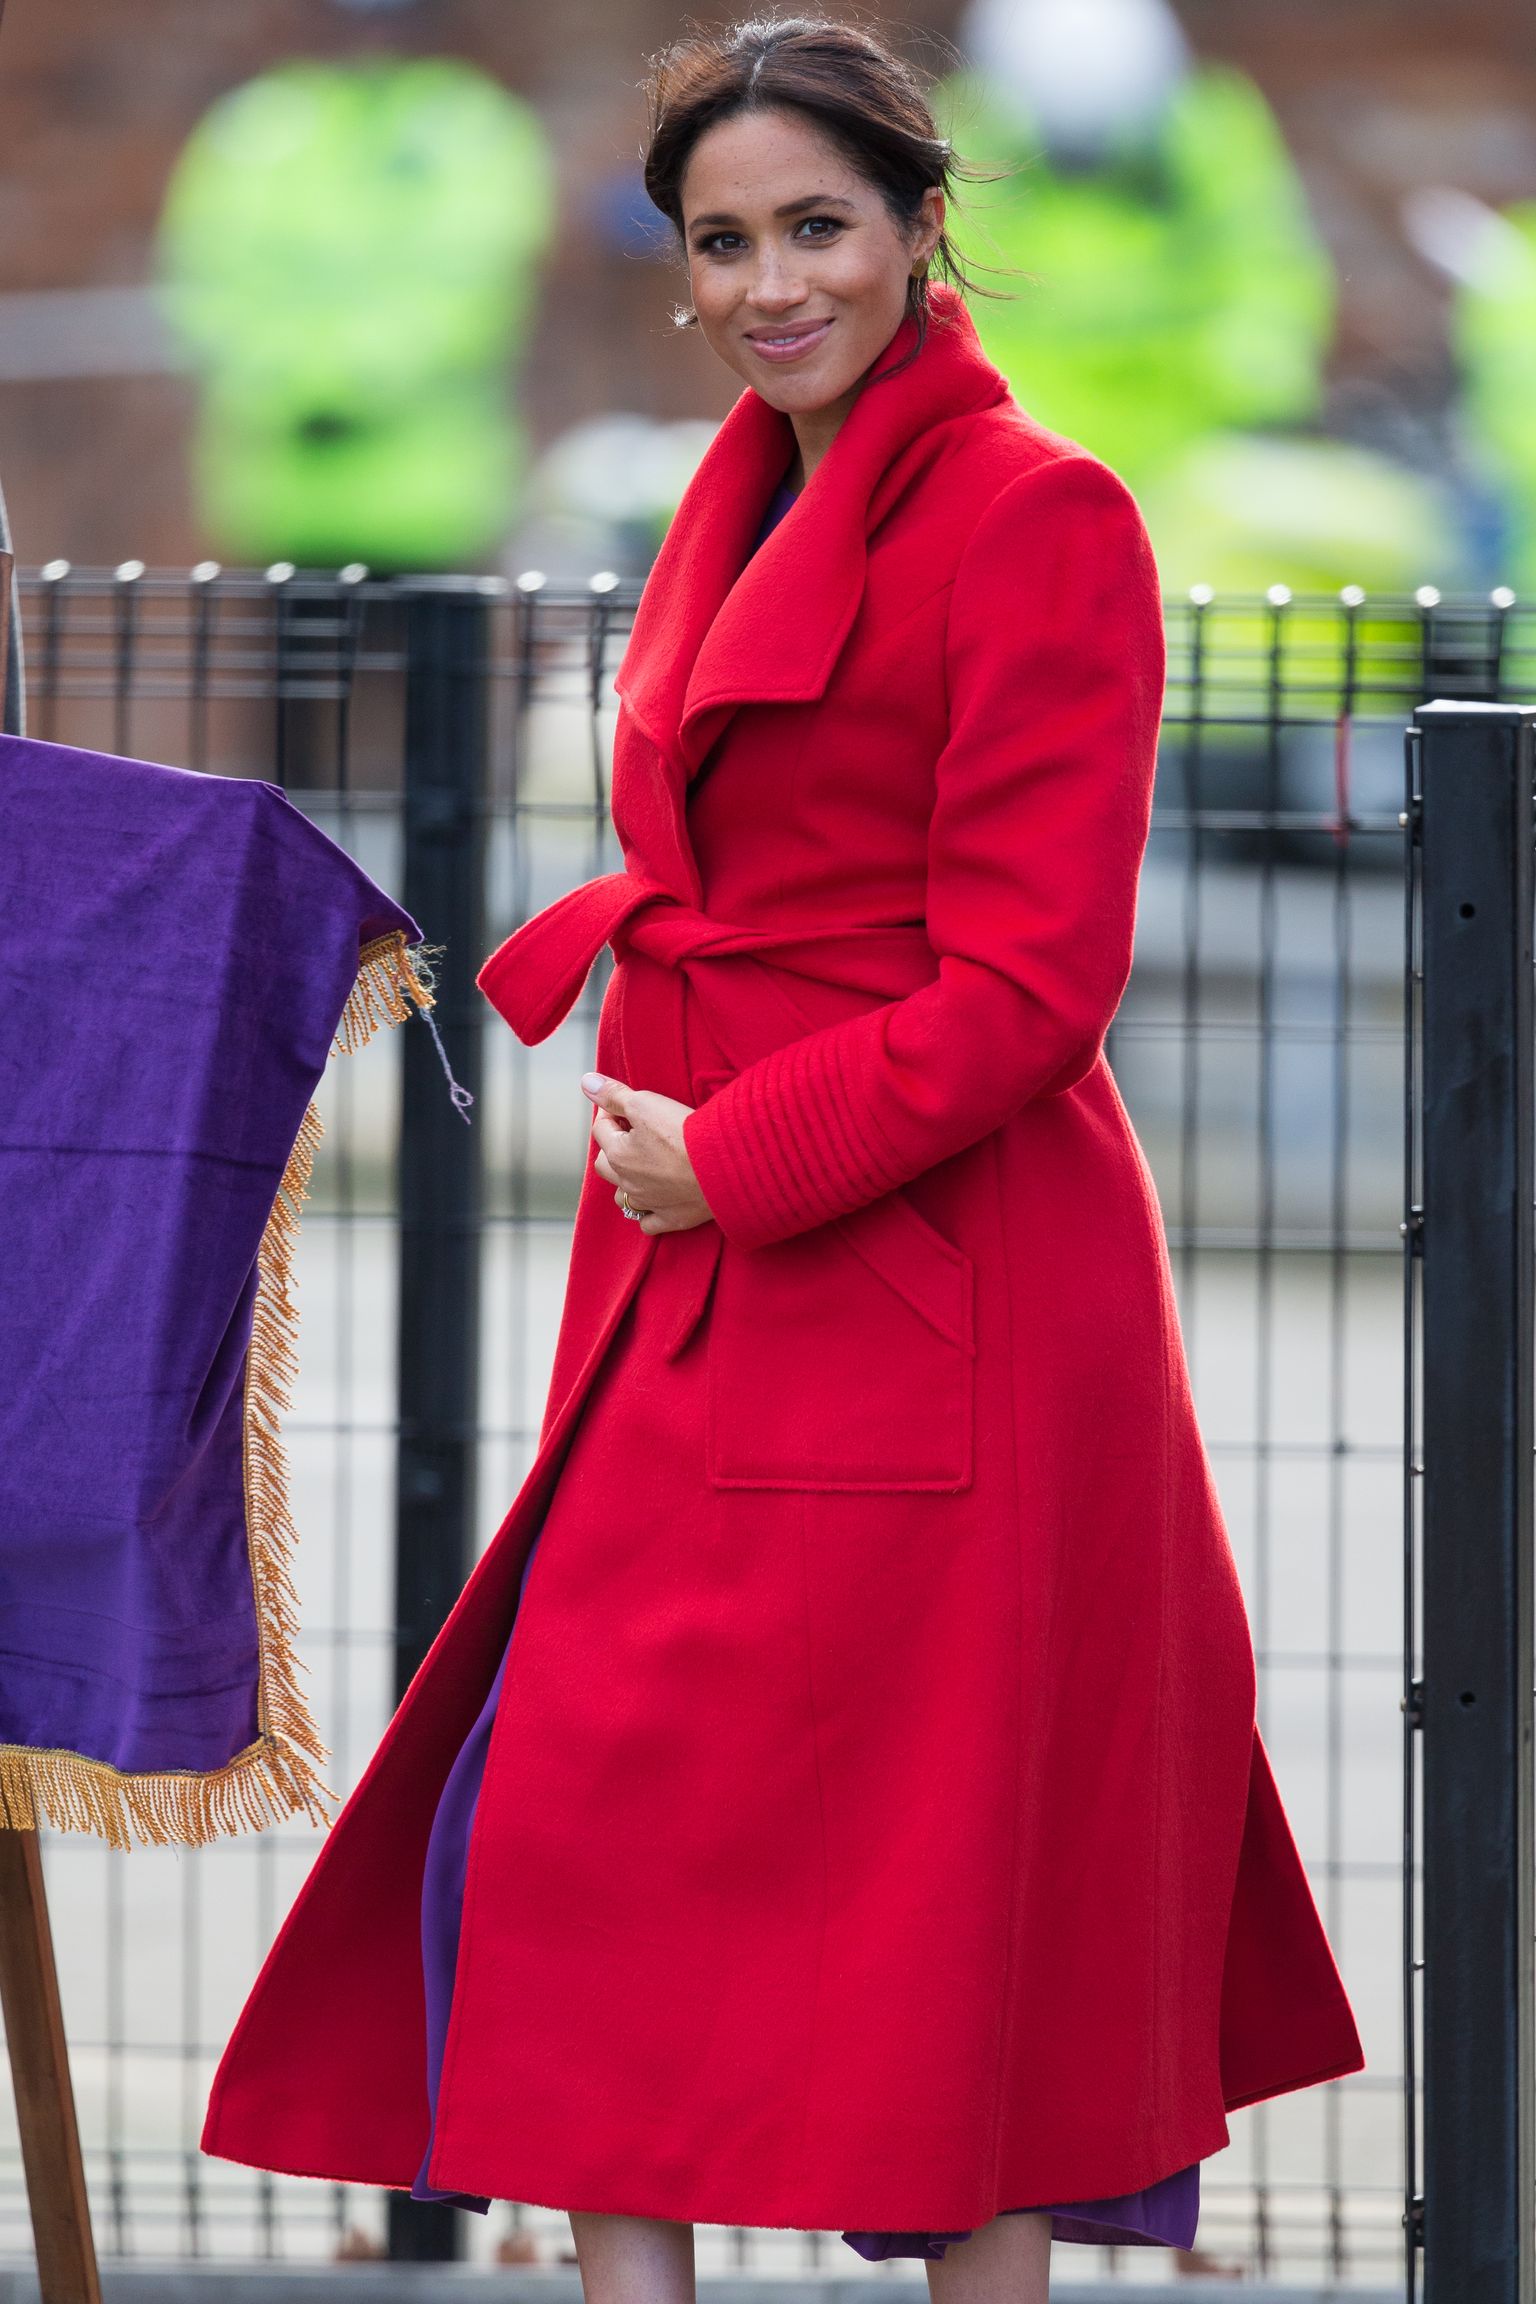 Suzzexi hertsoginna Meghan 14. jaanuaril 2019 Loode-Inglismaal Birkenheadis